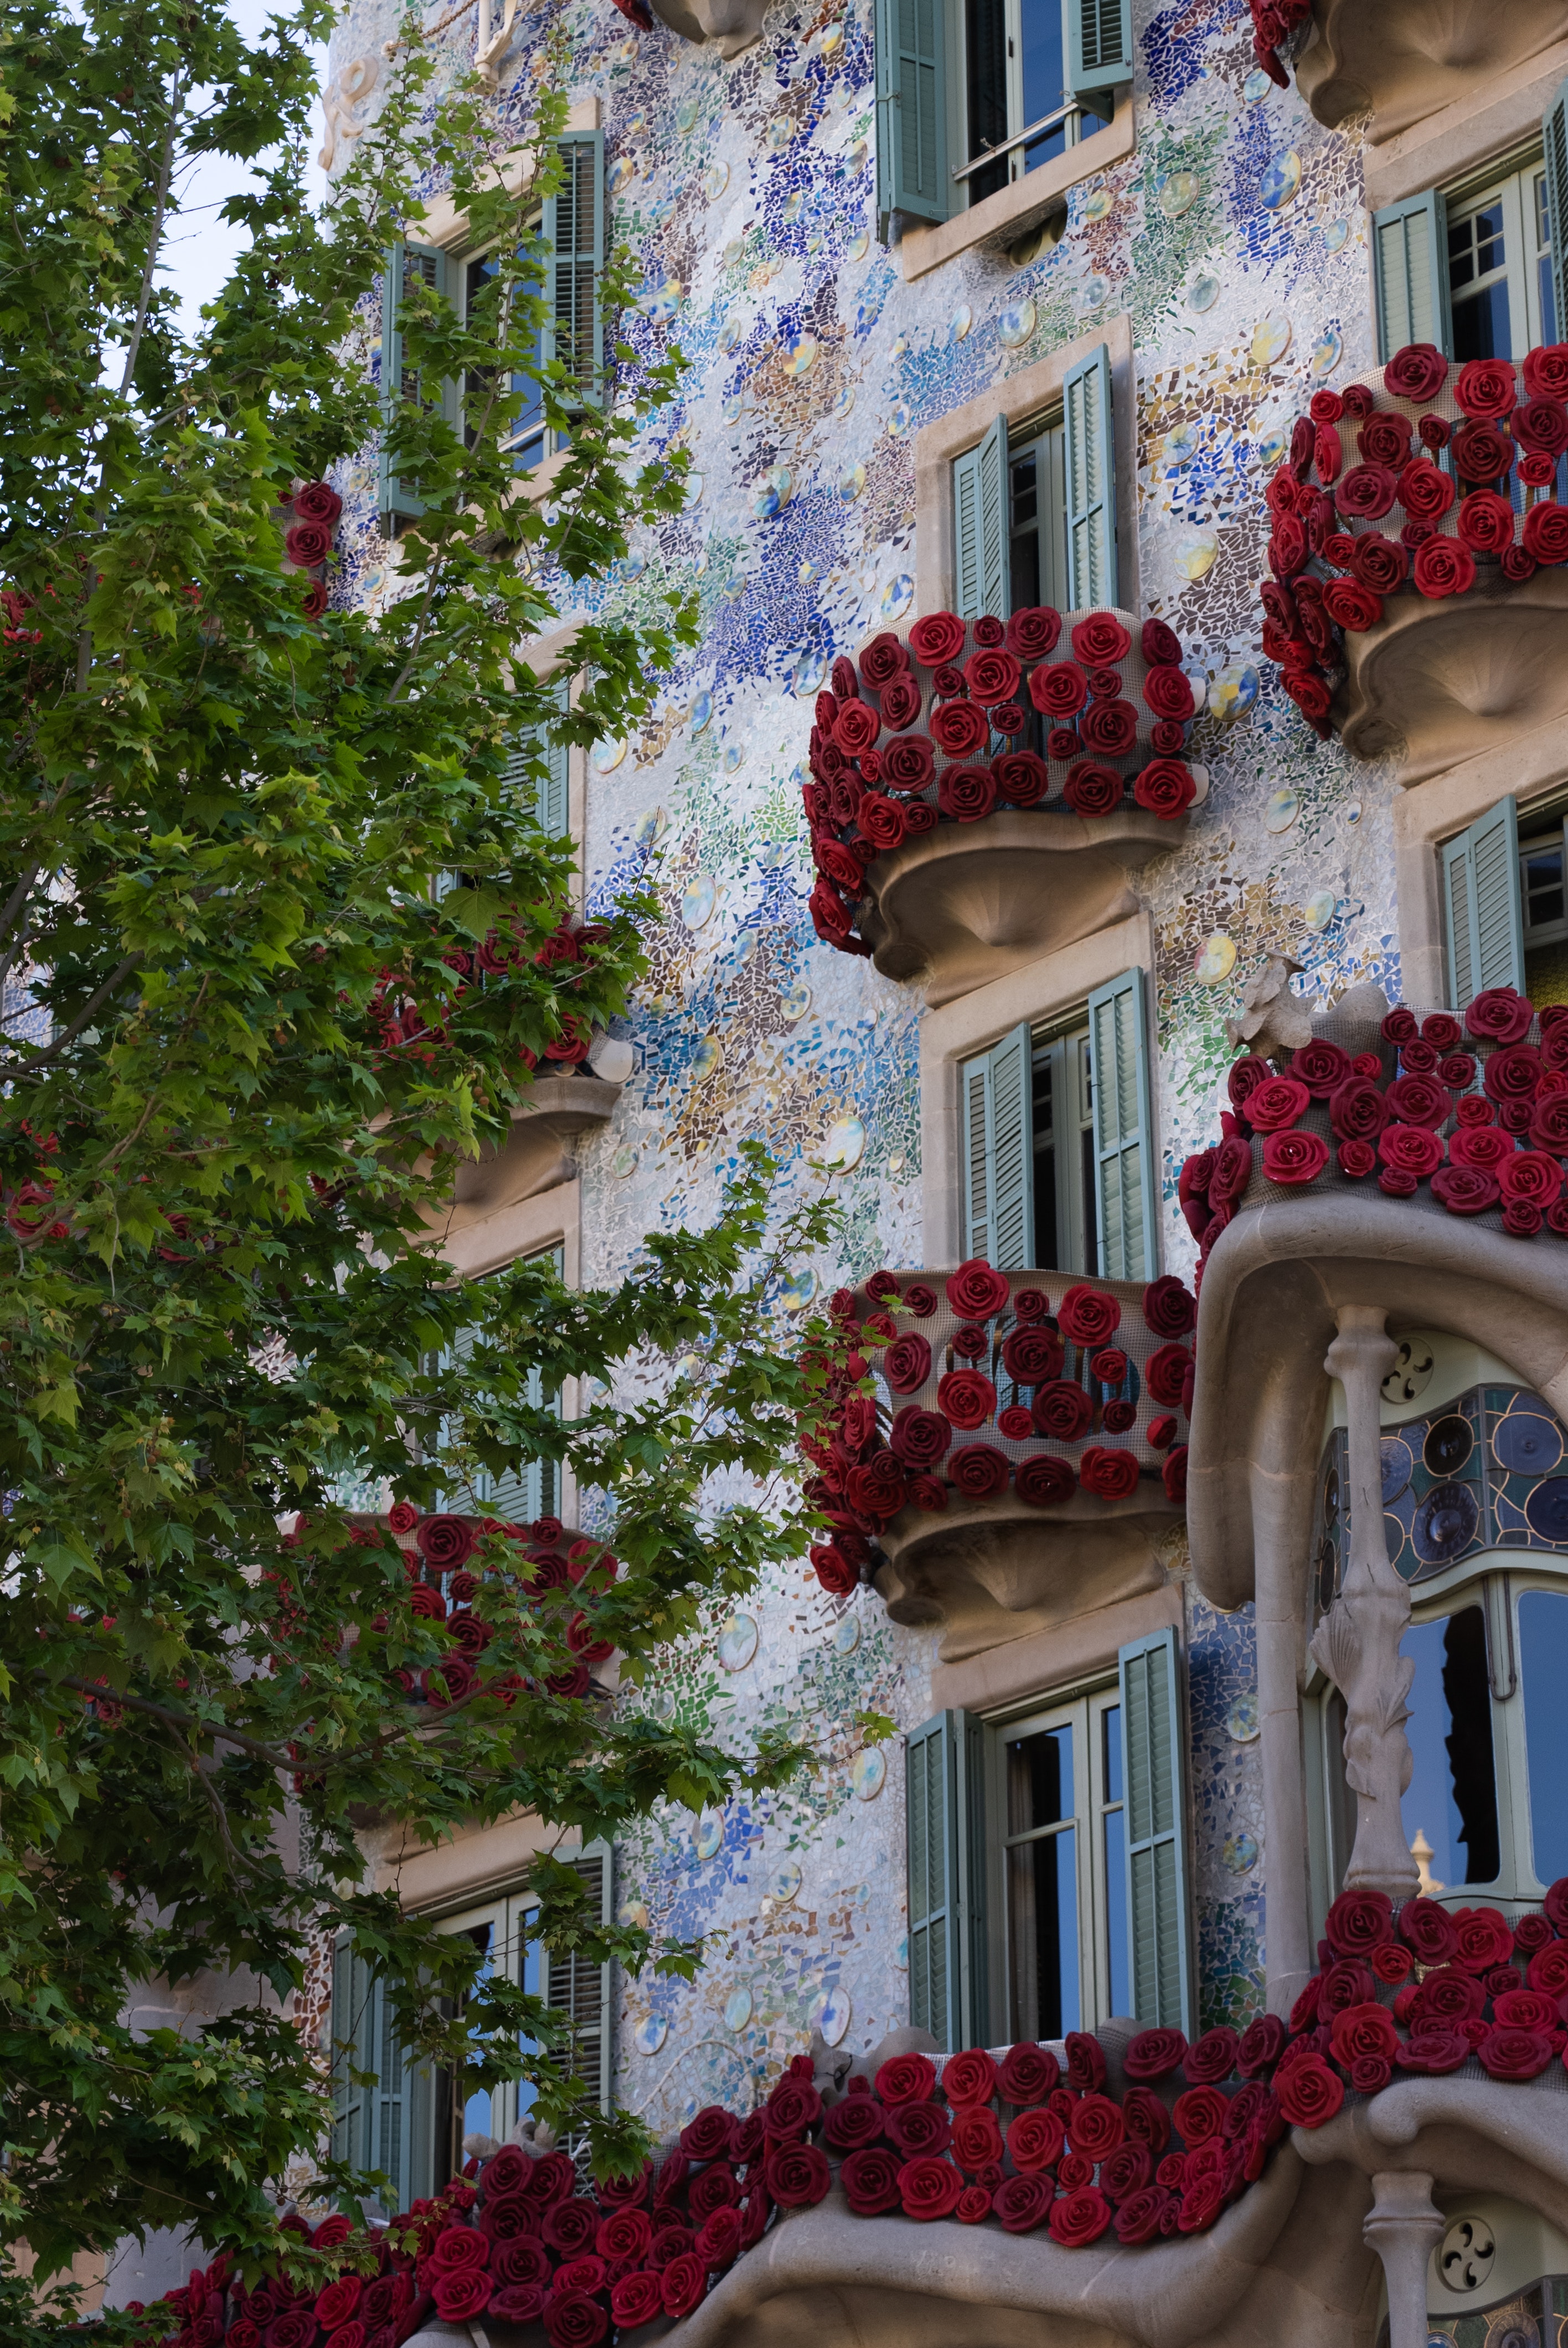 Casa Batlló per Sant Jordi. Font: Pexels - Dario Fernandez Ruz